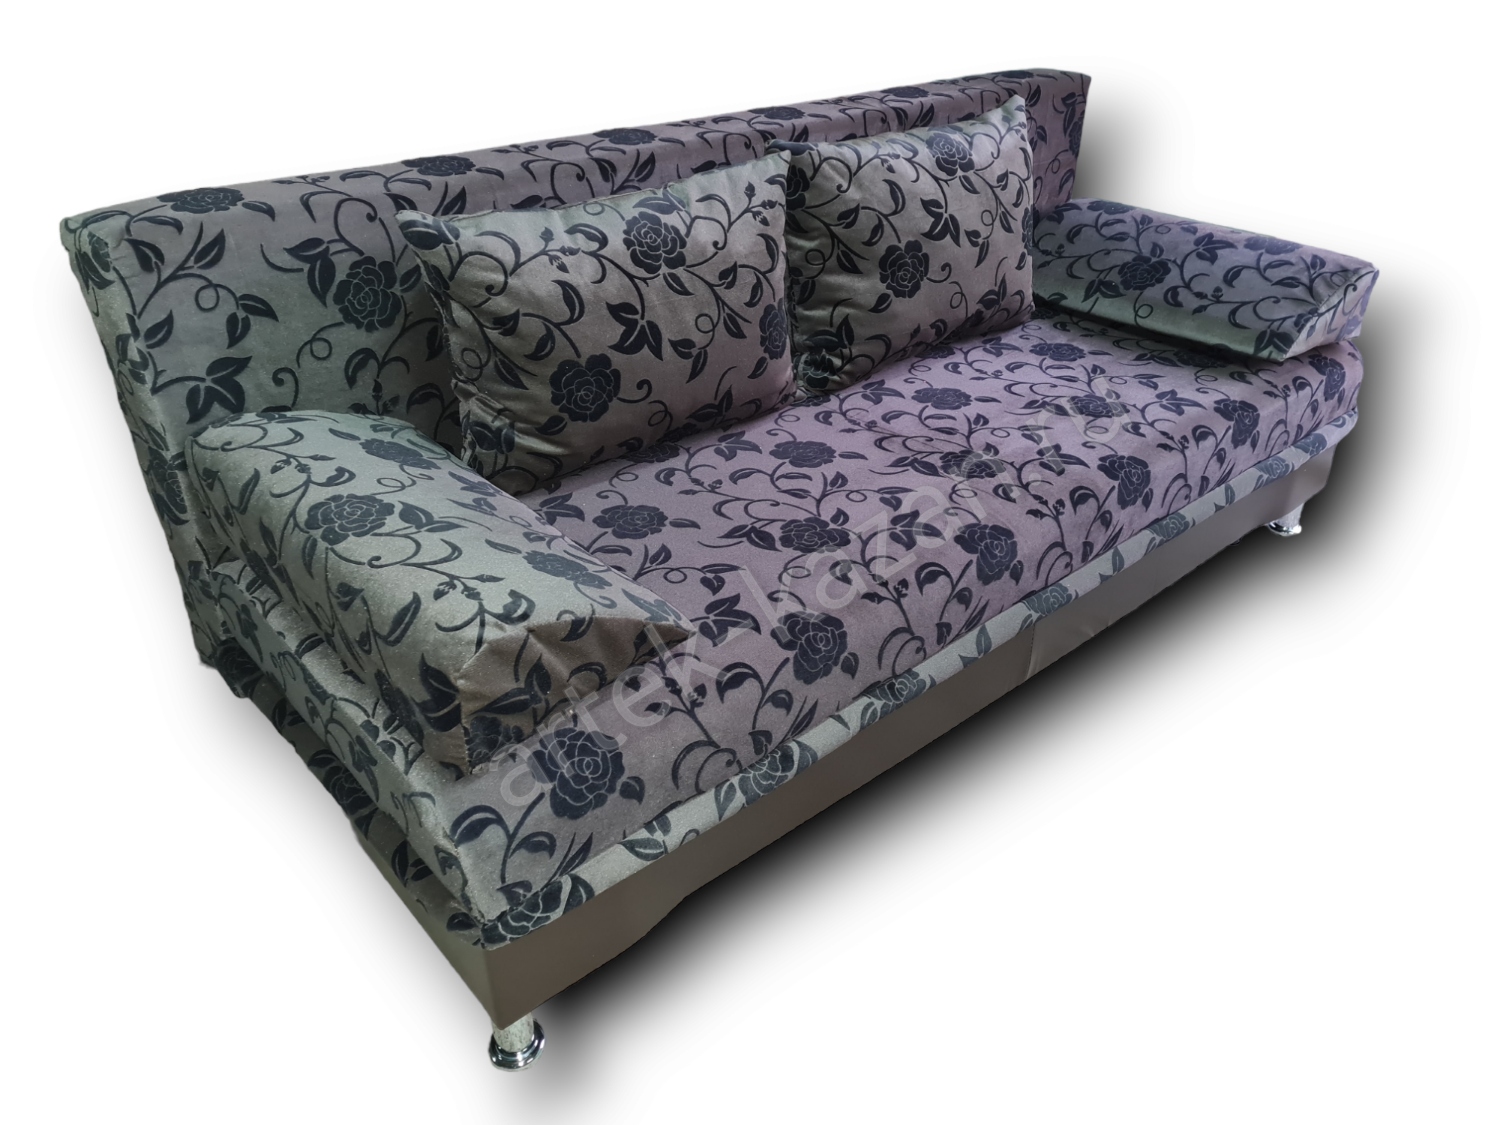 диван еврокнижка Эконом фото № 125. Купить недорогой диван по низкой цене от производителя можно у нас.